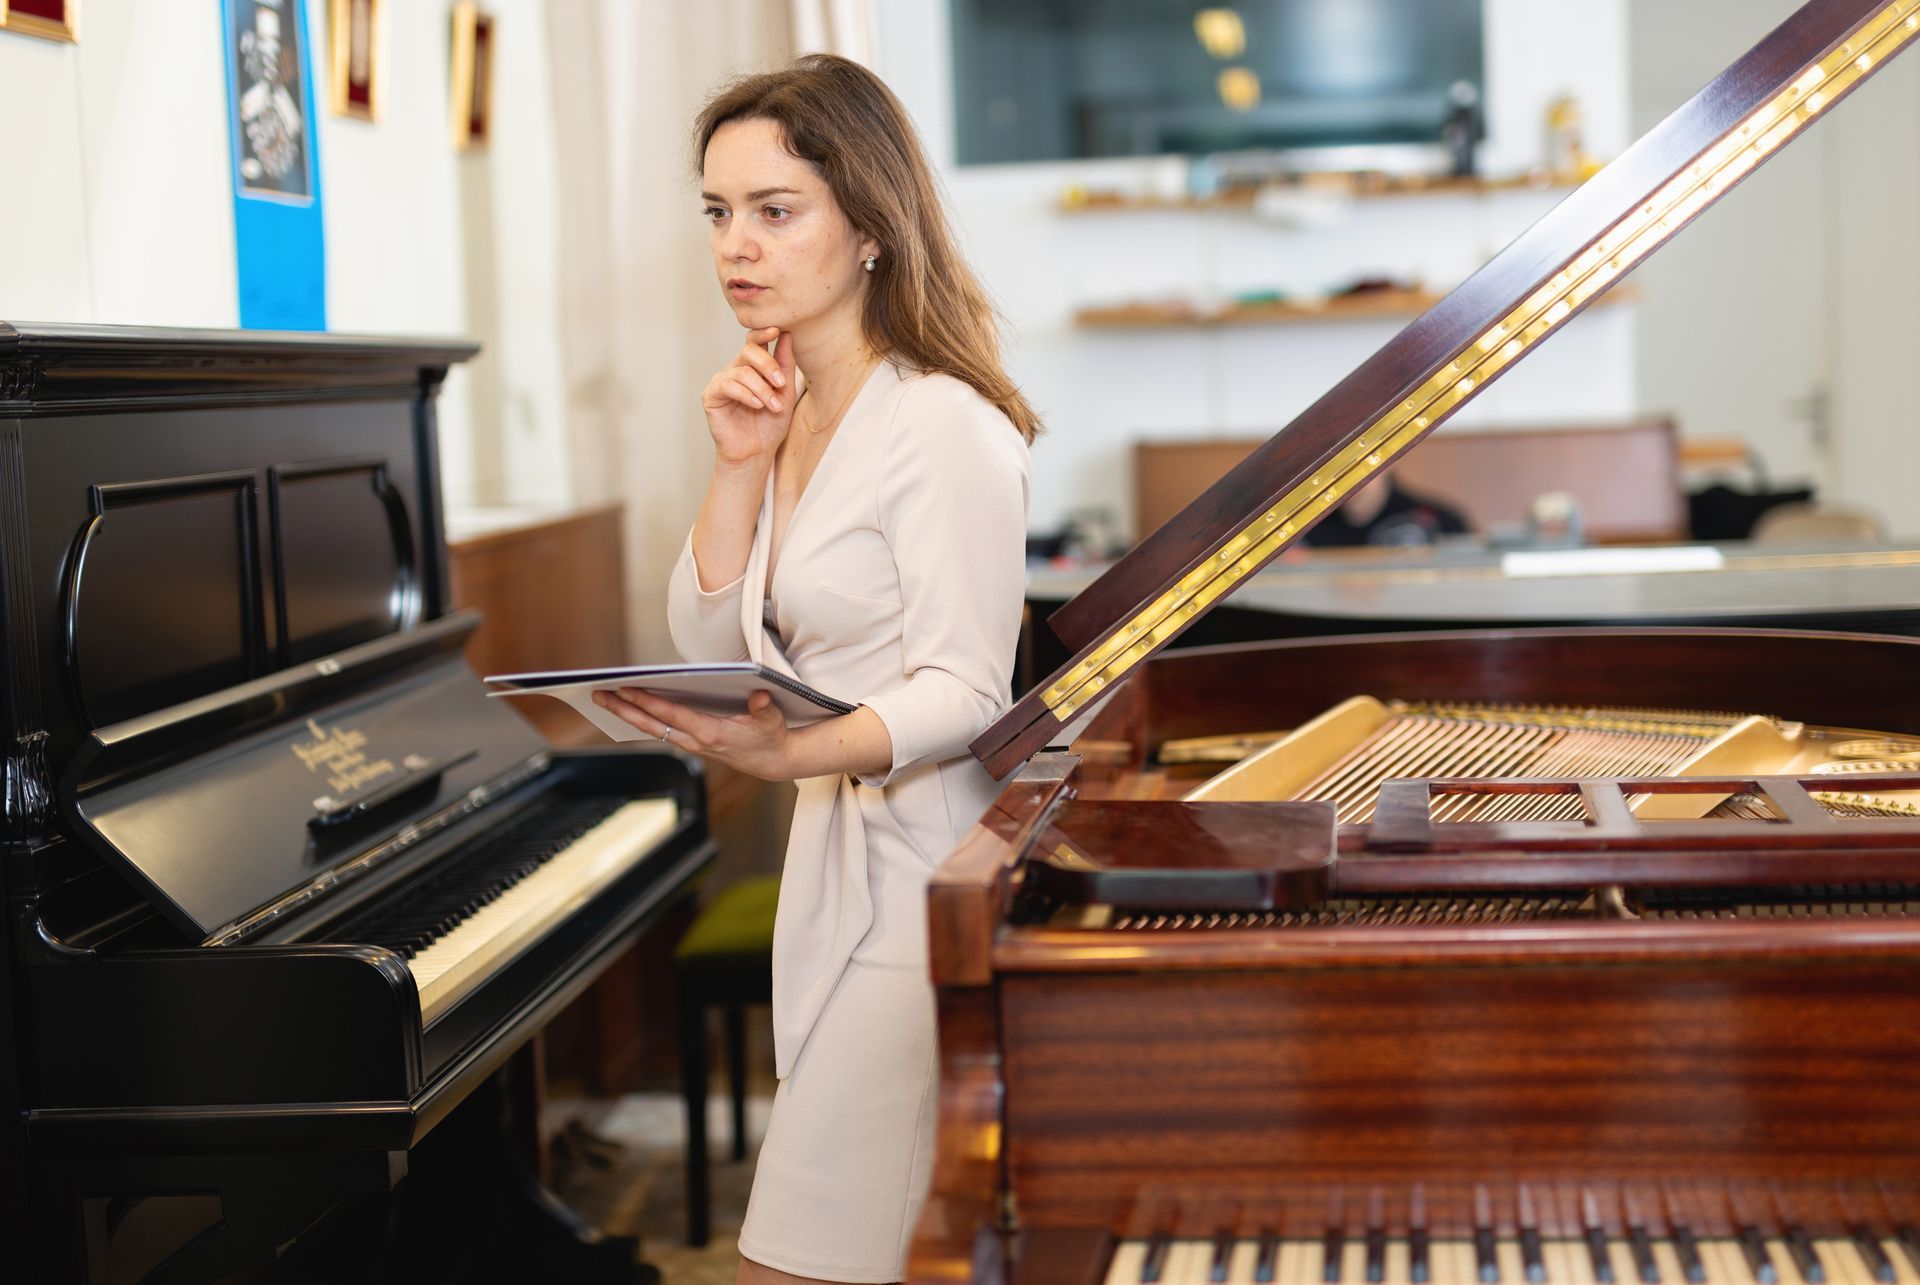 Femme au milieu de pianos